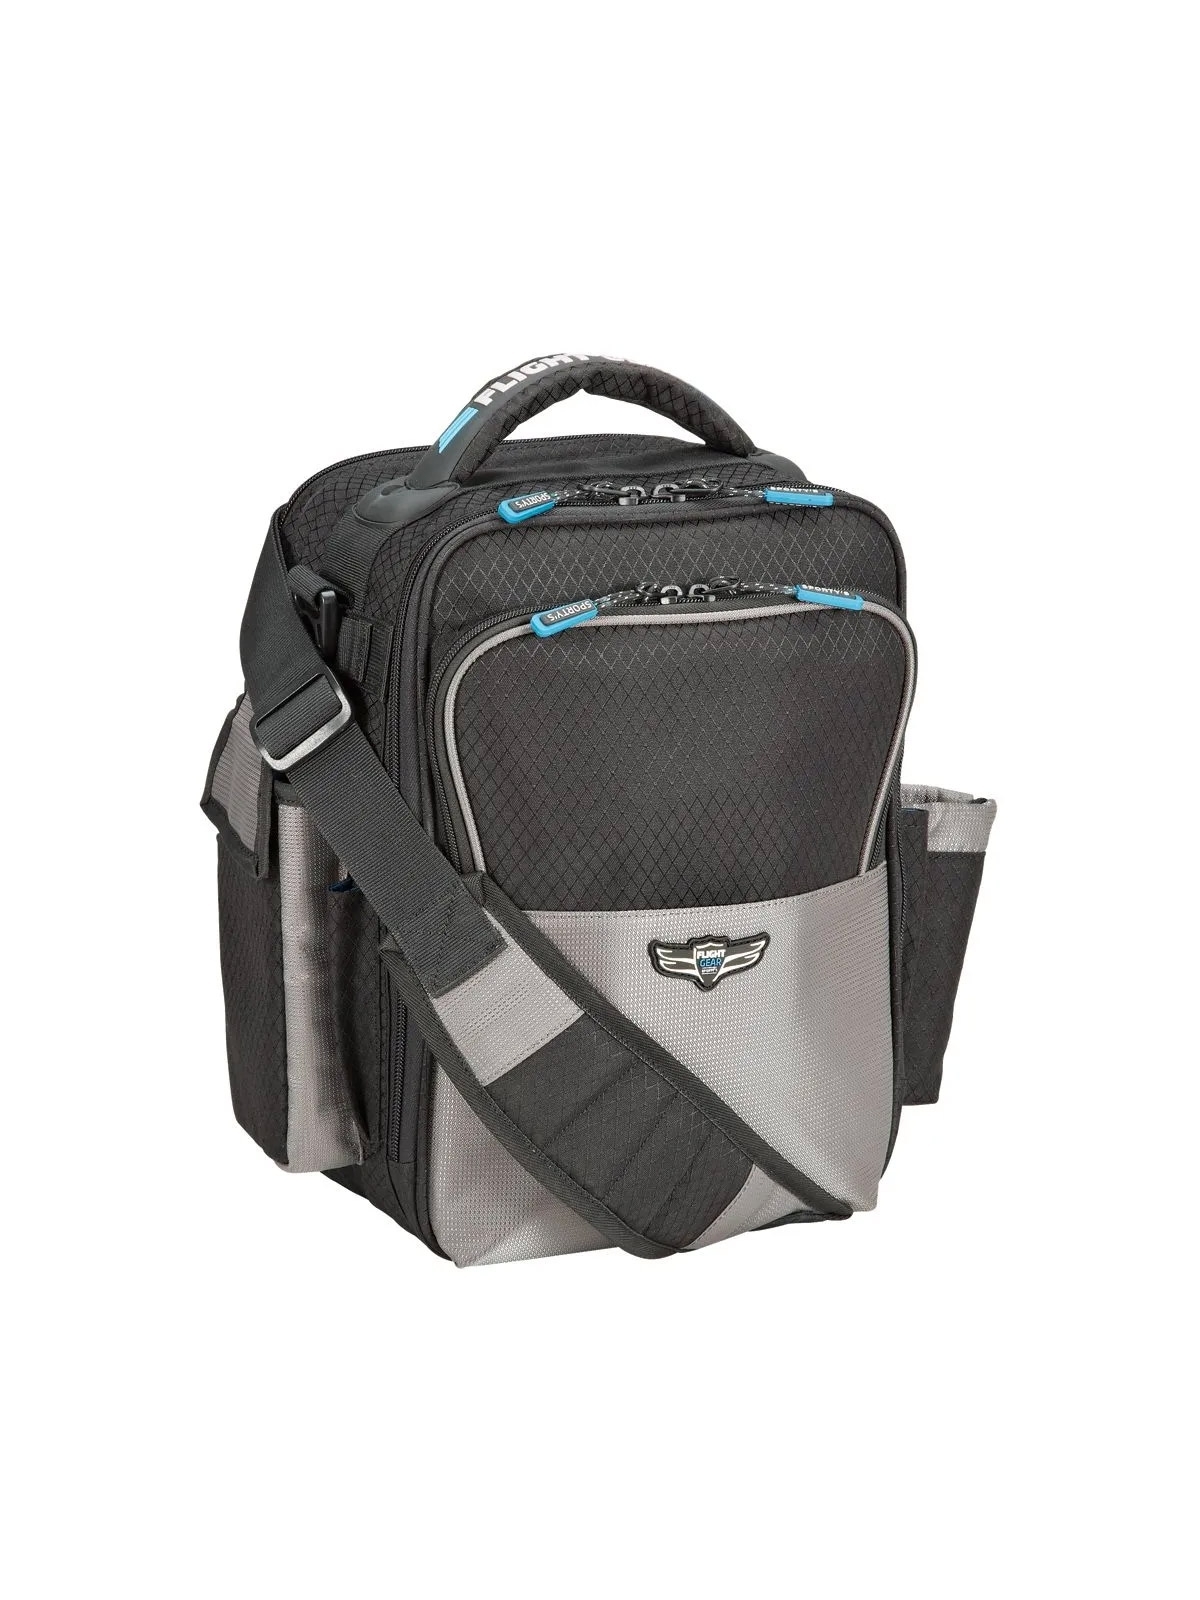 Flight Gear iPad Bag - schwarz/grau